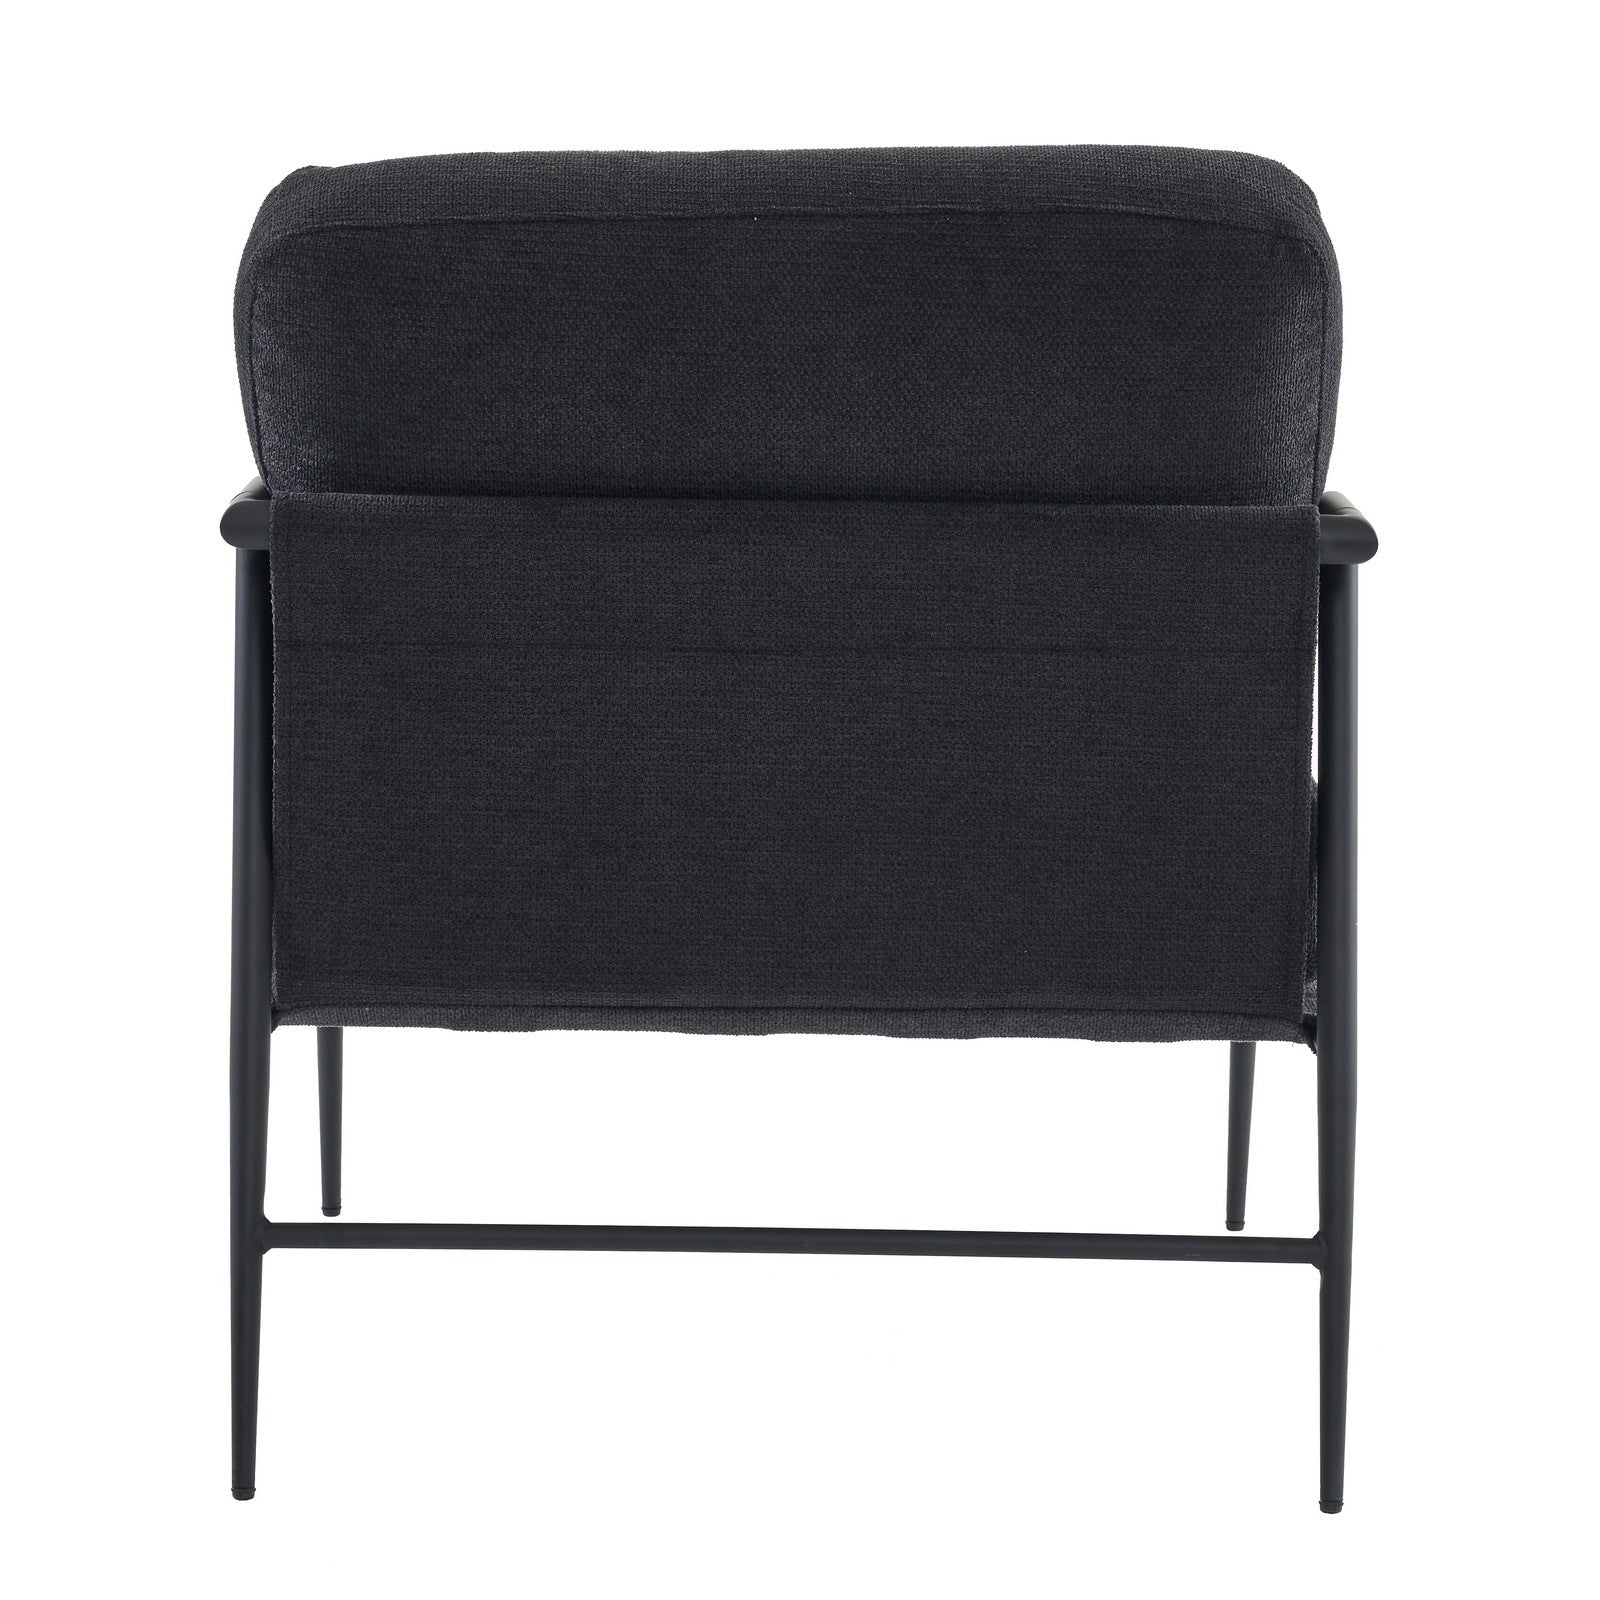 Leisure chair lounge chair velvet Black color black-velvet